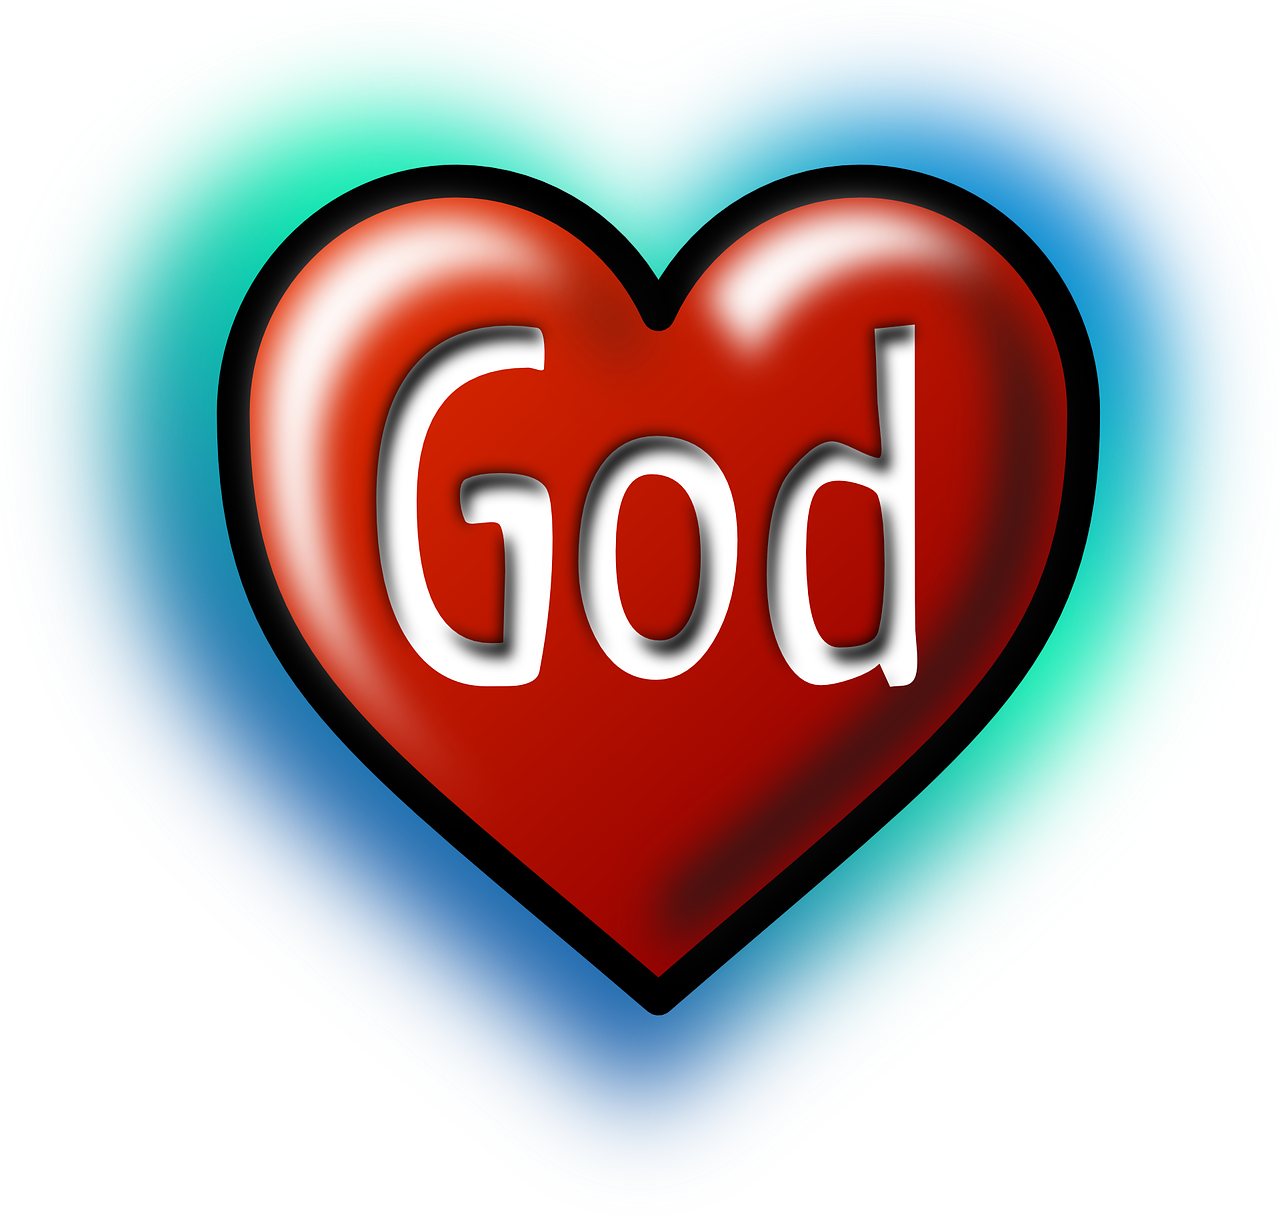 Dievas, Širdis, Meilė, Religija, Krikščionybė, Krikščionis, Simbolis, Dvasinis, Bažnyčia, Piktograma